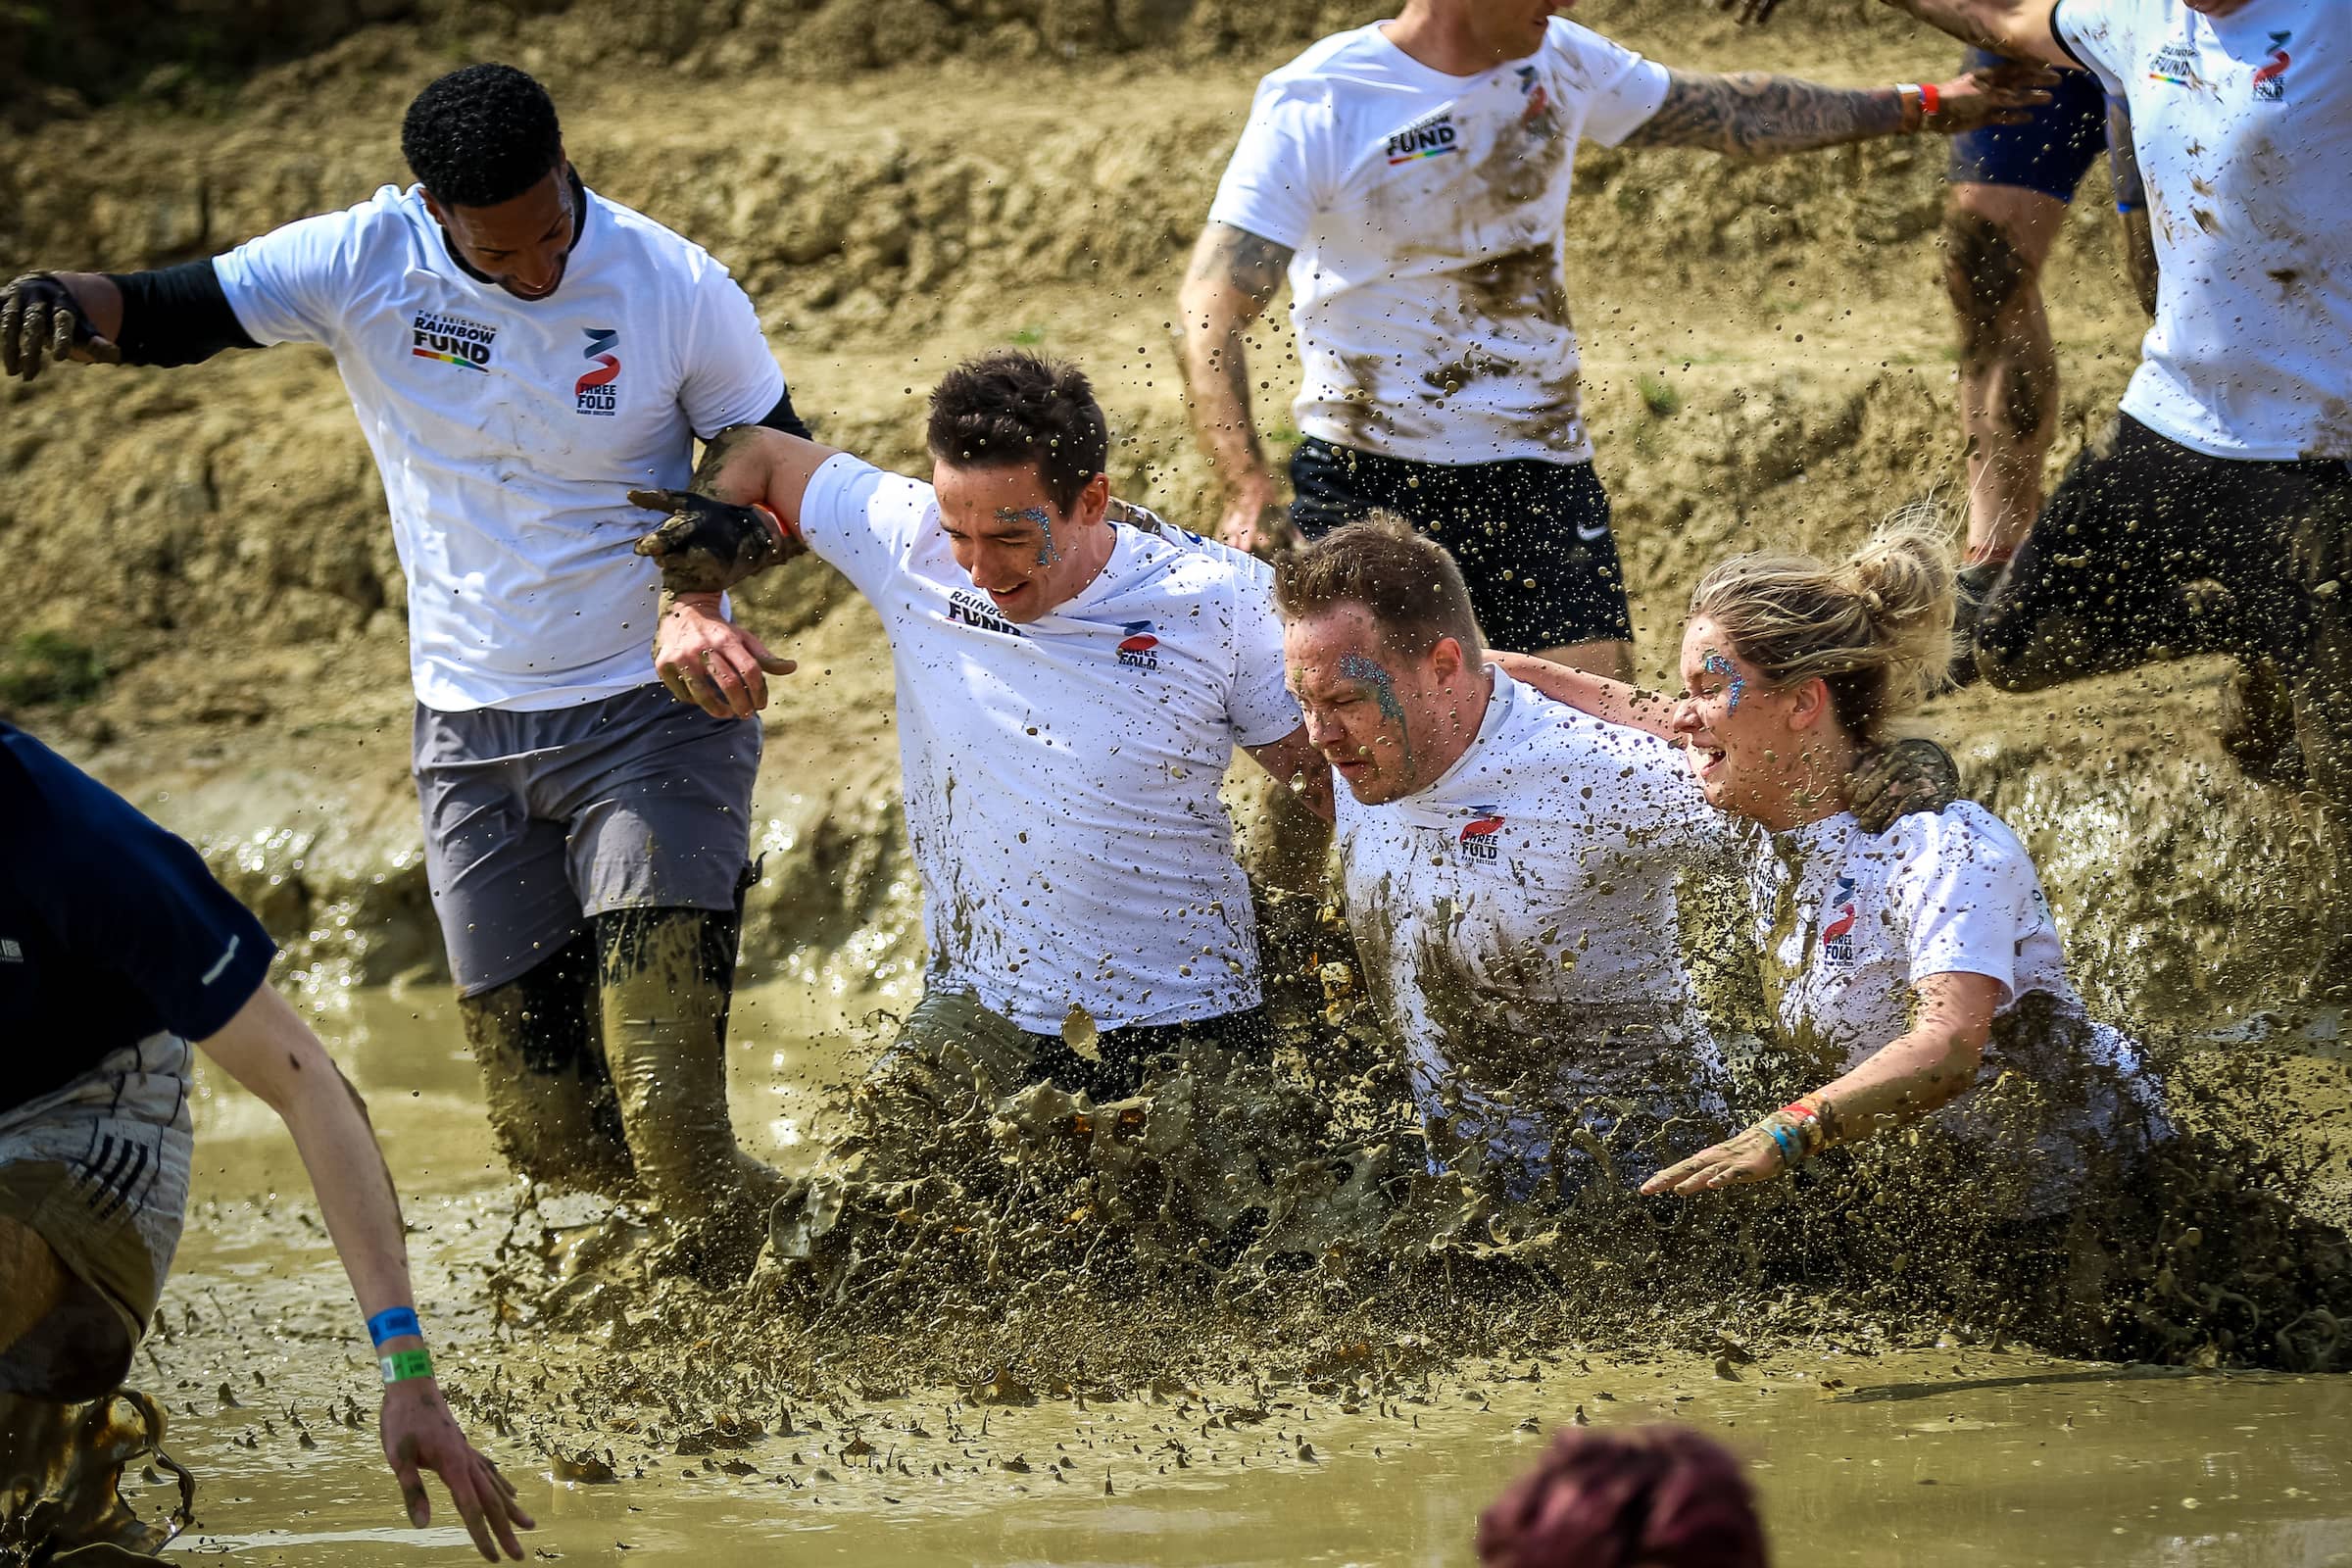 Tough mudder athletes in mud